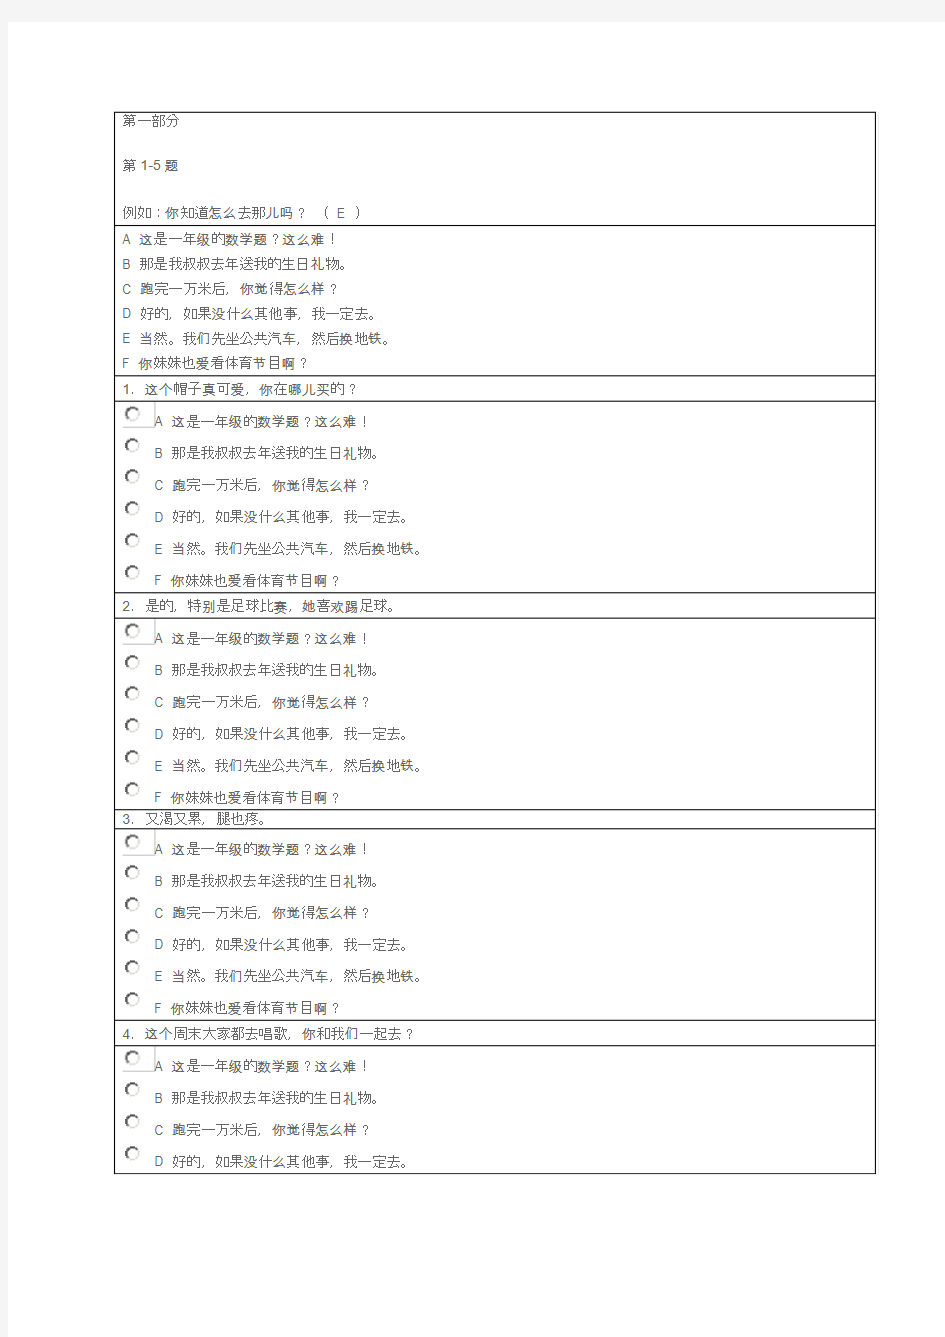 新汉语水平考试三级模拟试卷(笔试部分)